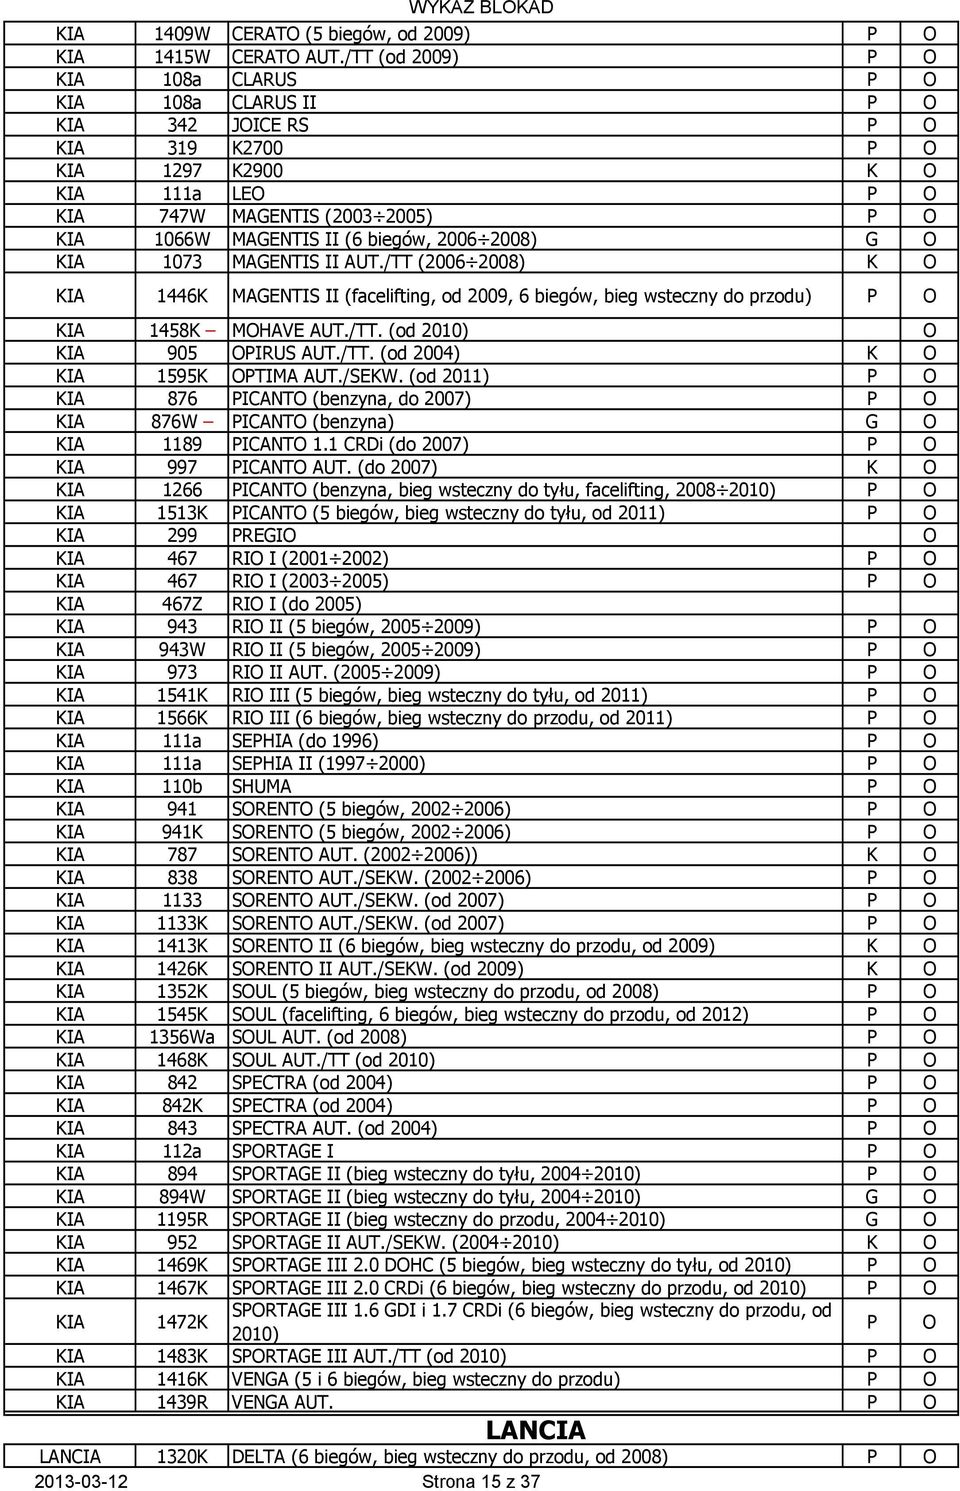 MAGENTIS II AUT./TT (2006 2008) K O KIA 1446K MAGENTIS II (facelifting, od 2009, 6 biegów, bieg wsteczny do przodu) KIA 1458K MOHAVE AUT./TT. (od 2010) O KIA 905 OPIRUS AUT./TT. (od 2004) K O KIA 1595K OPTIMA AUT.